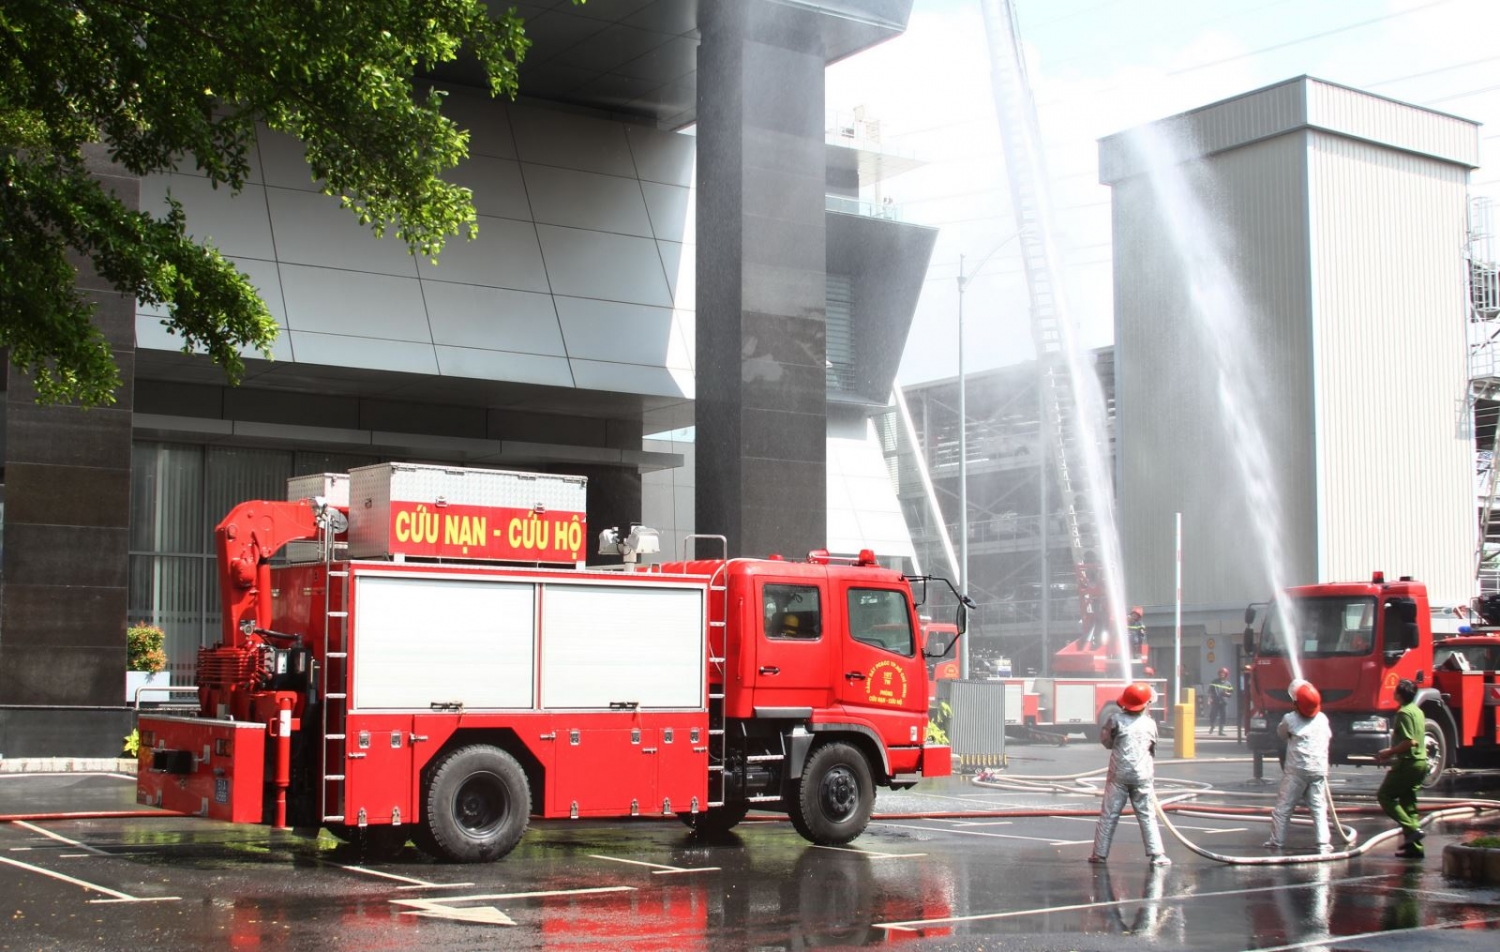 Diễn tập phương án chữa cháy, cứu nạn, cứu hộ tại tòa nhà PV GAS Tower